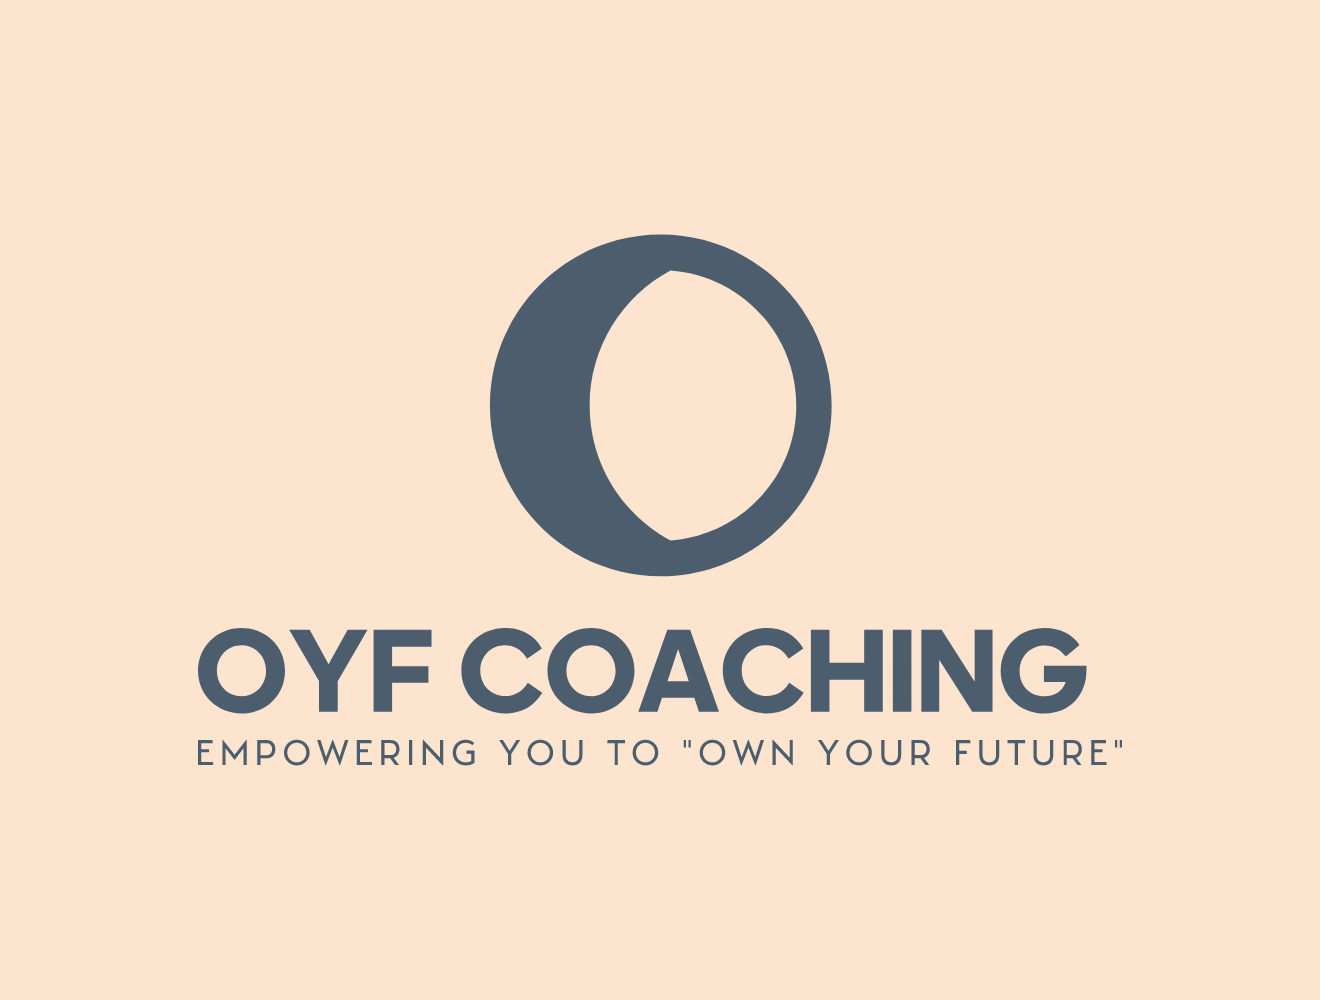 OYF Coaching (Own Your Future)